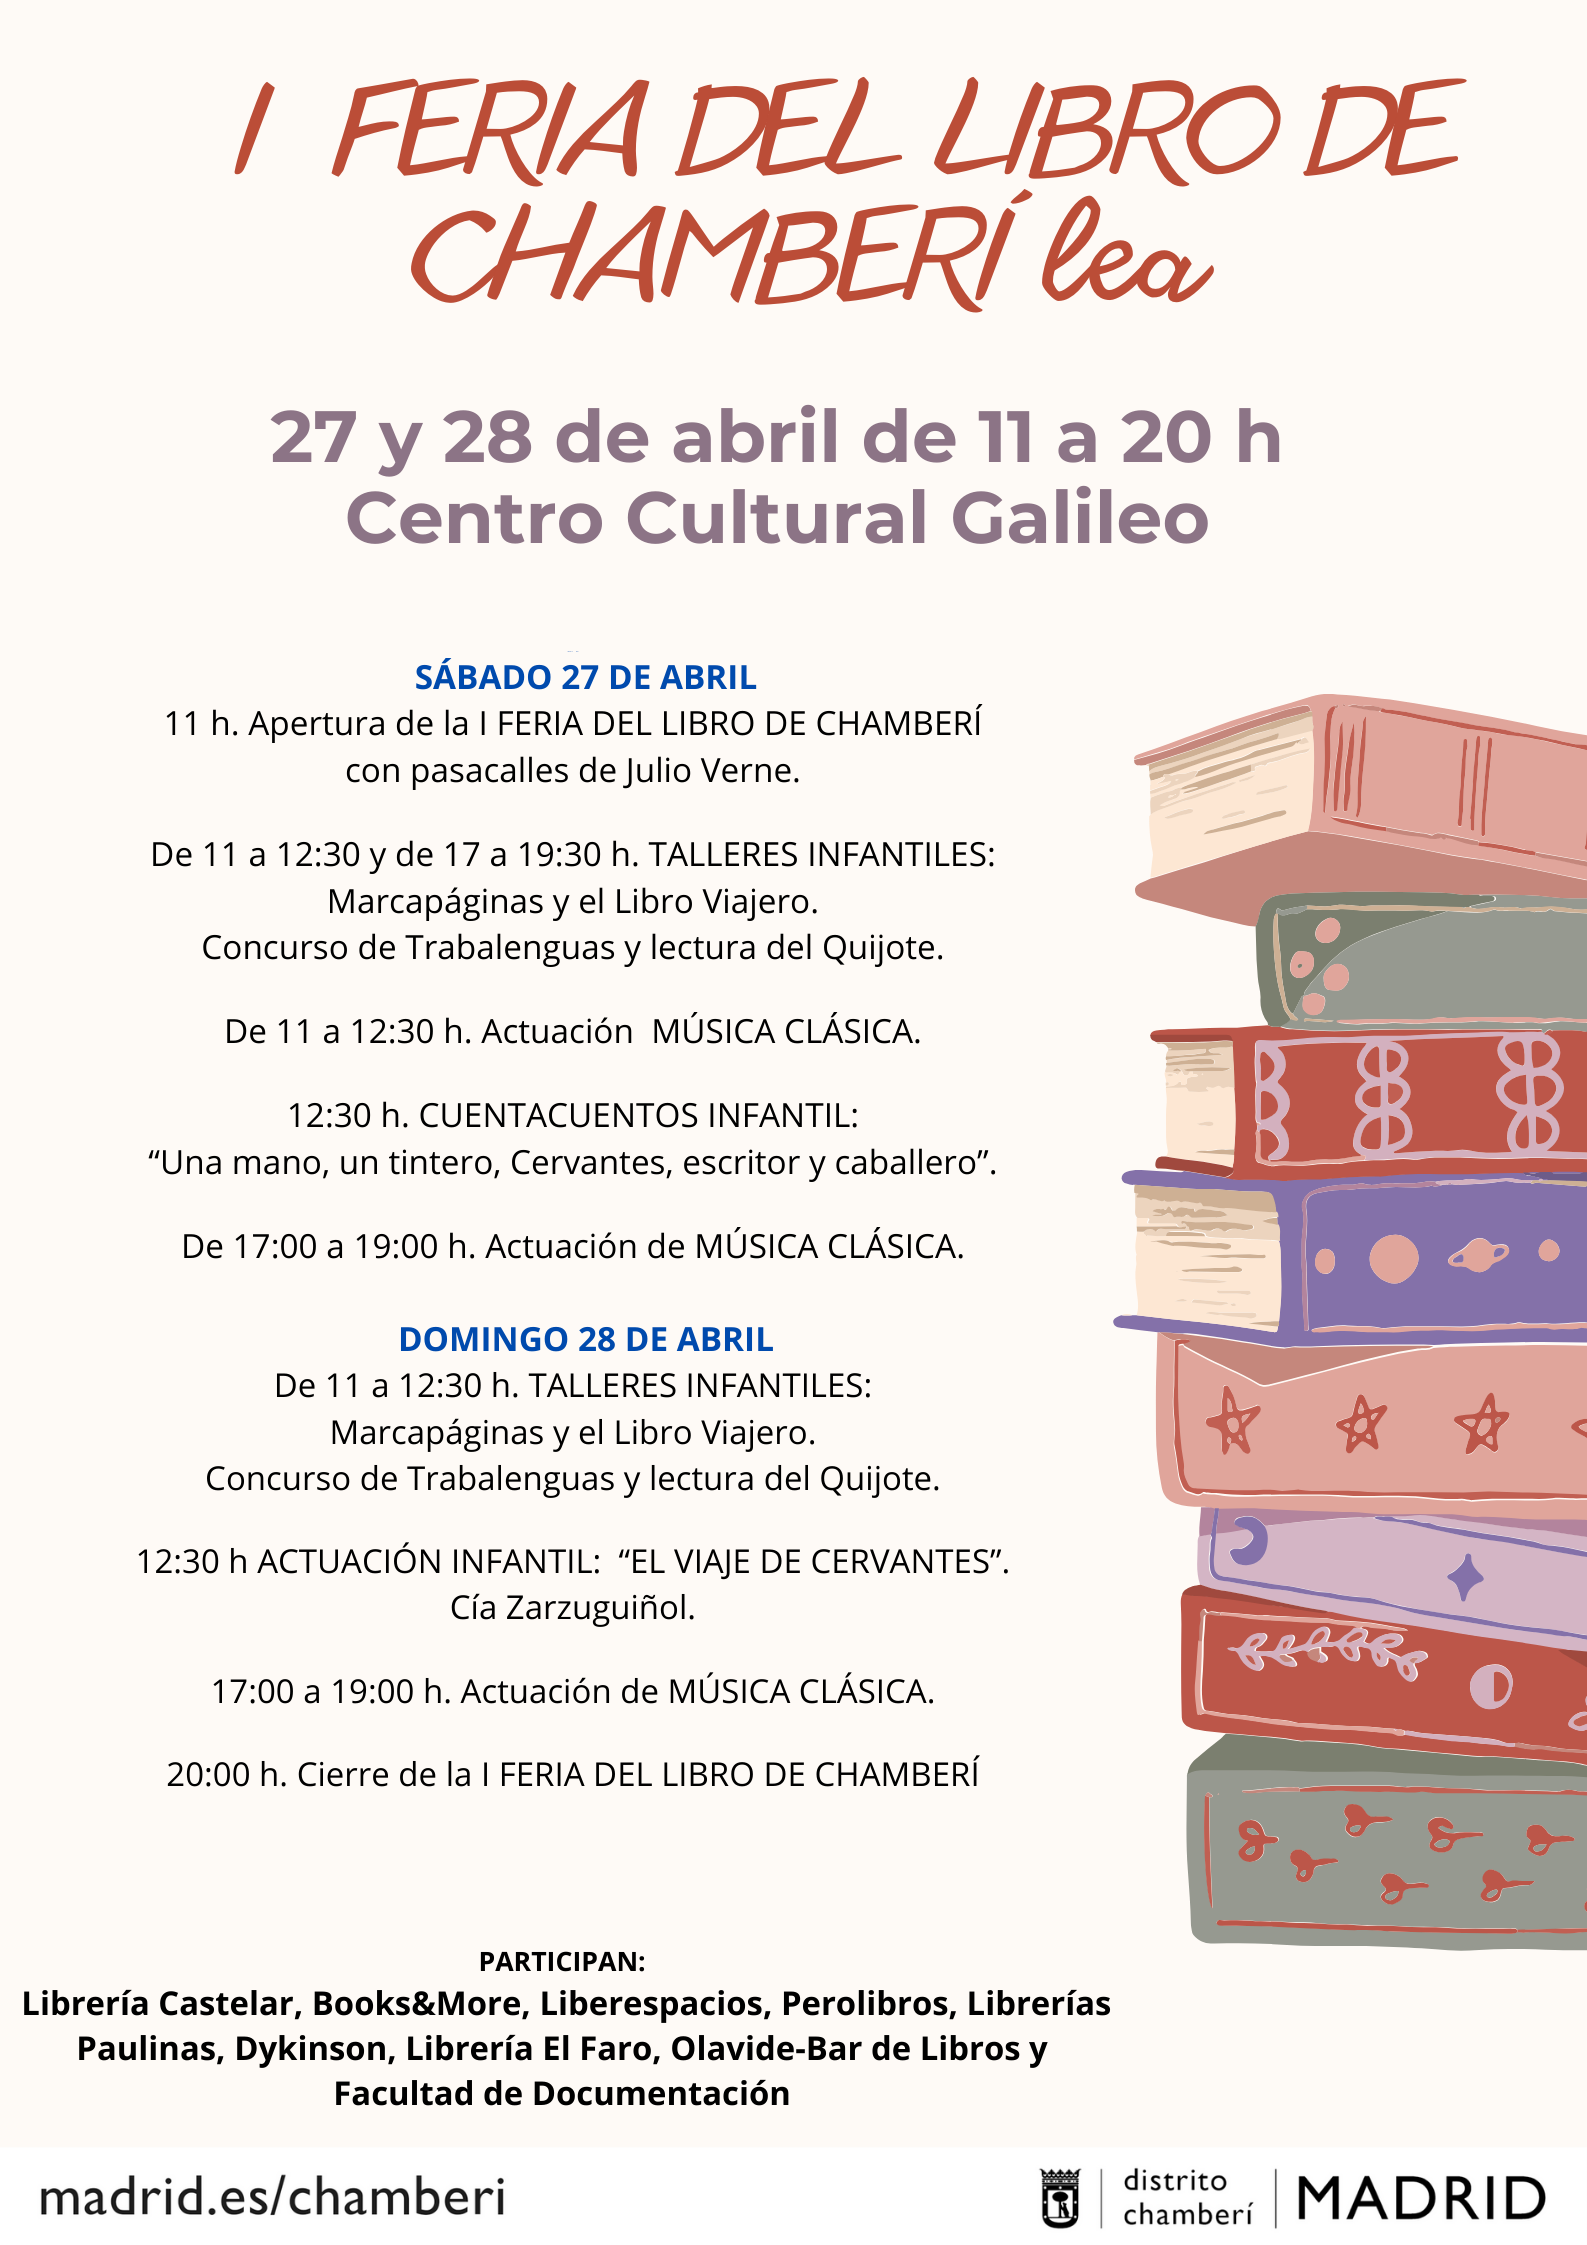 Librería-Editorial Dykinson participará en la I Feria del libro de Chamberí los próximos 27 y 28 de abril